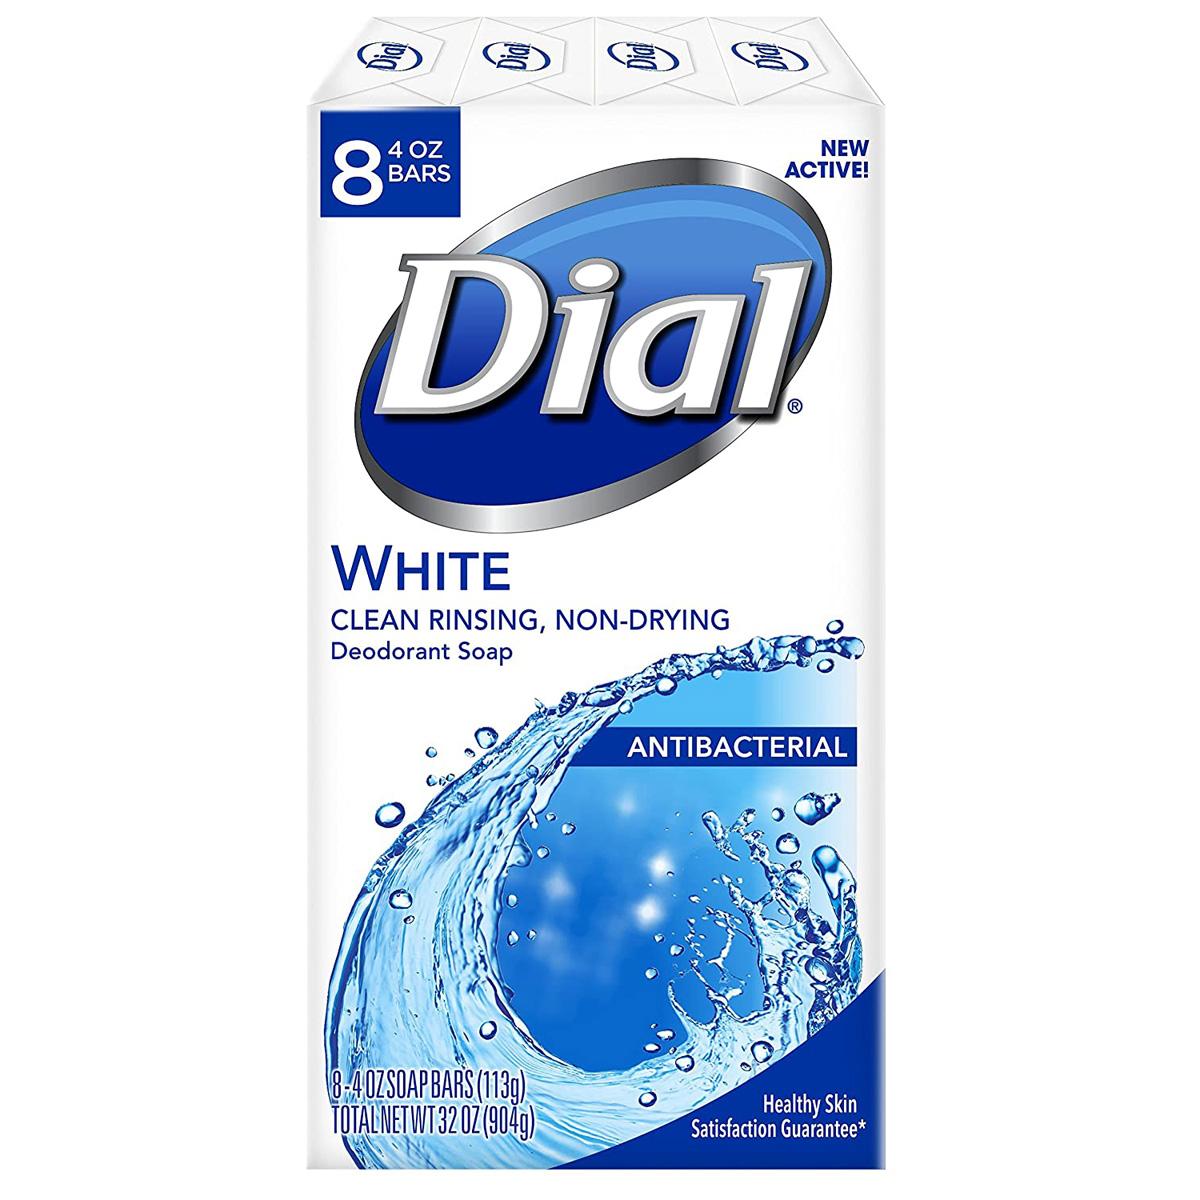 8 Dial Antibacterial Deodorant Bar Soap for $3.32 Shipped